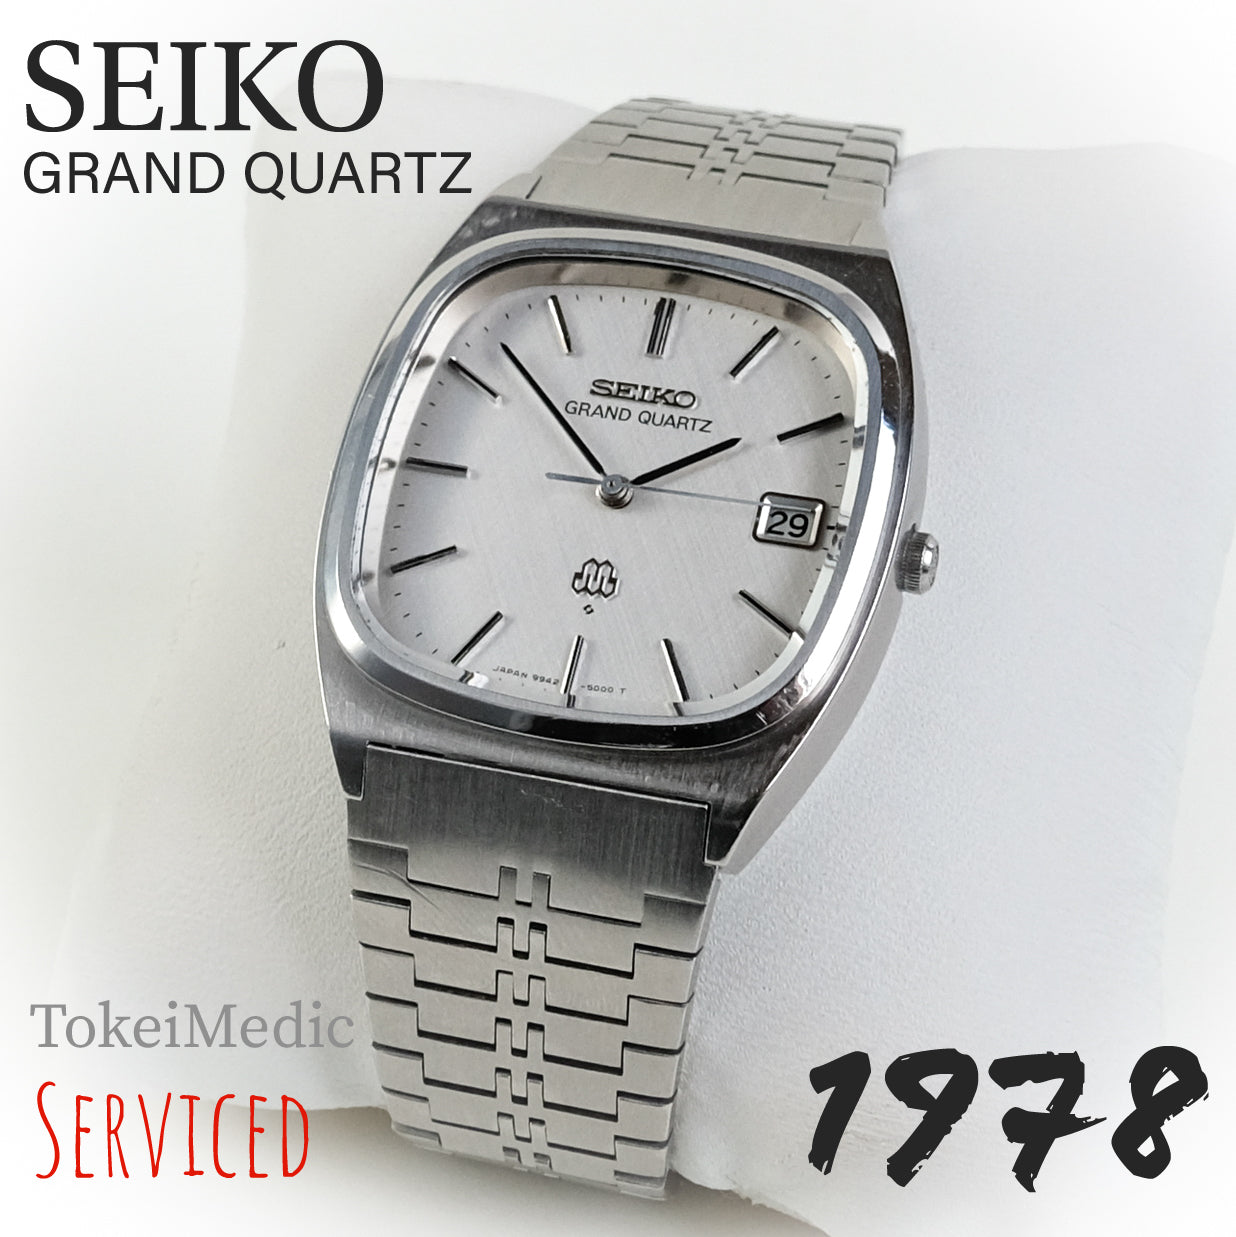 1978 Seiko Grand Quartz 9942-5000